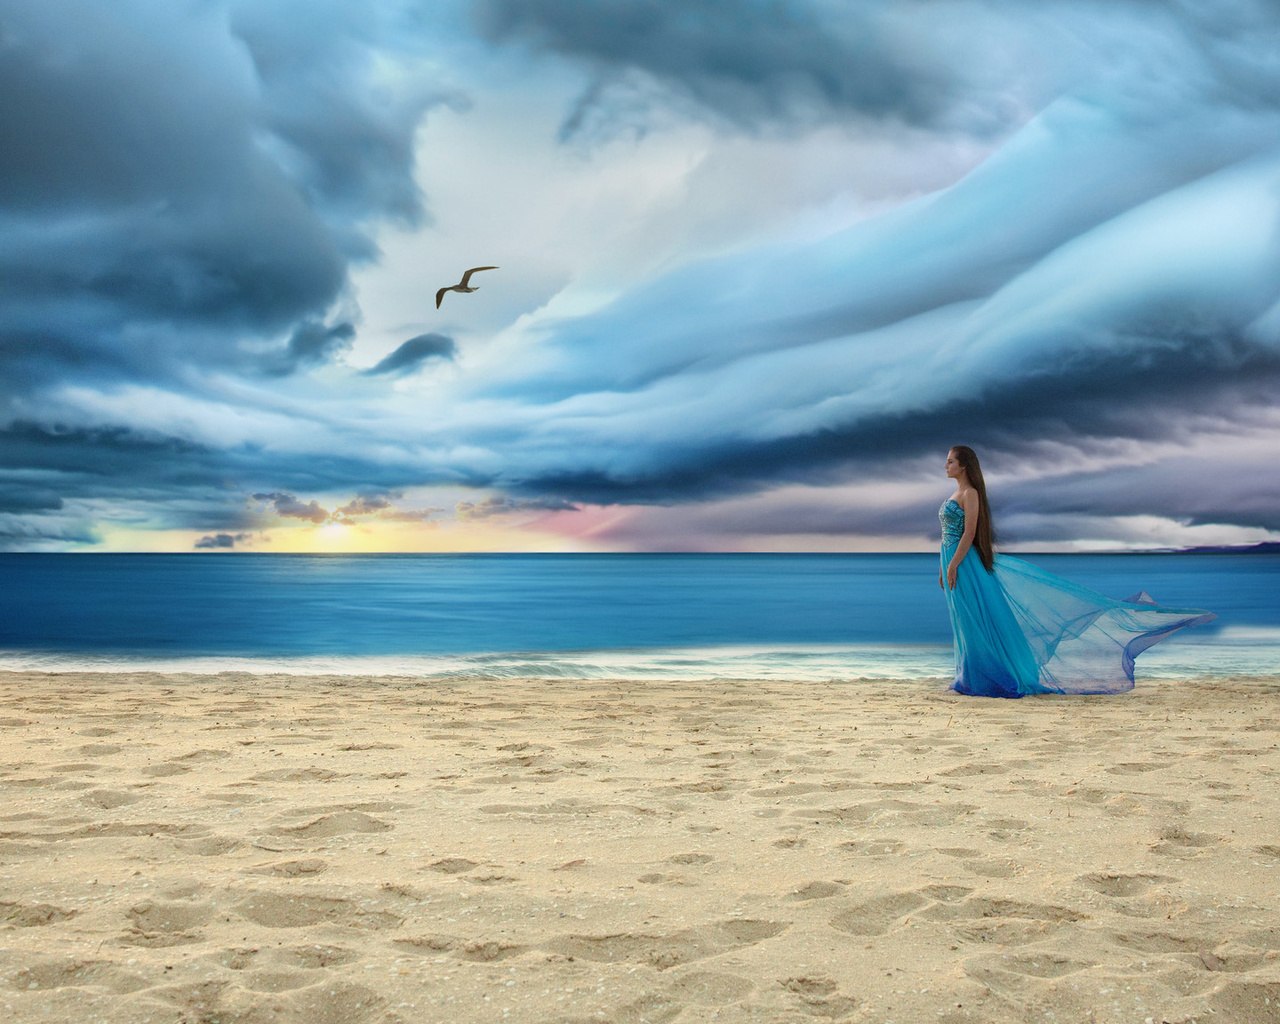 Ах этот голубой напоминает море песня. Девушка на берегу в синем платье. Девушка на берегу. Девушка на берегу моря. Девушка в синем платье на пляже.